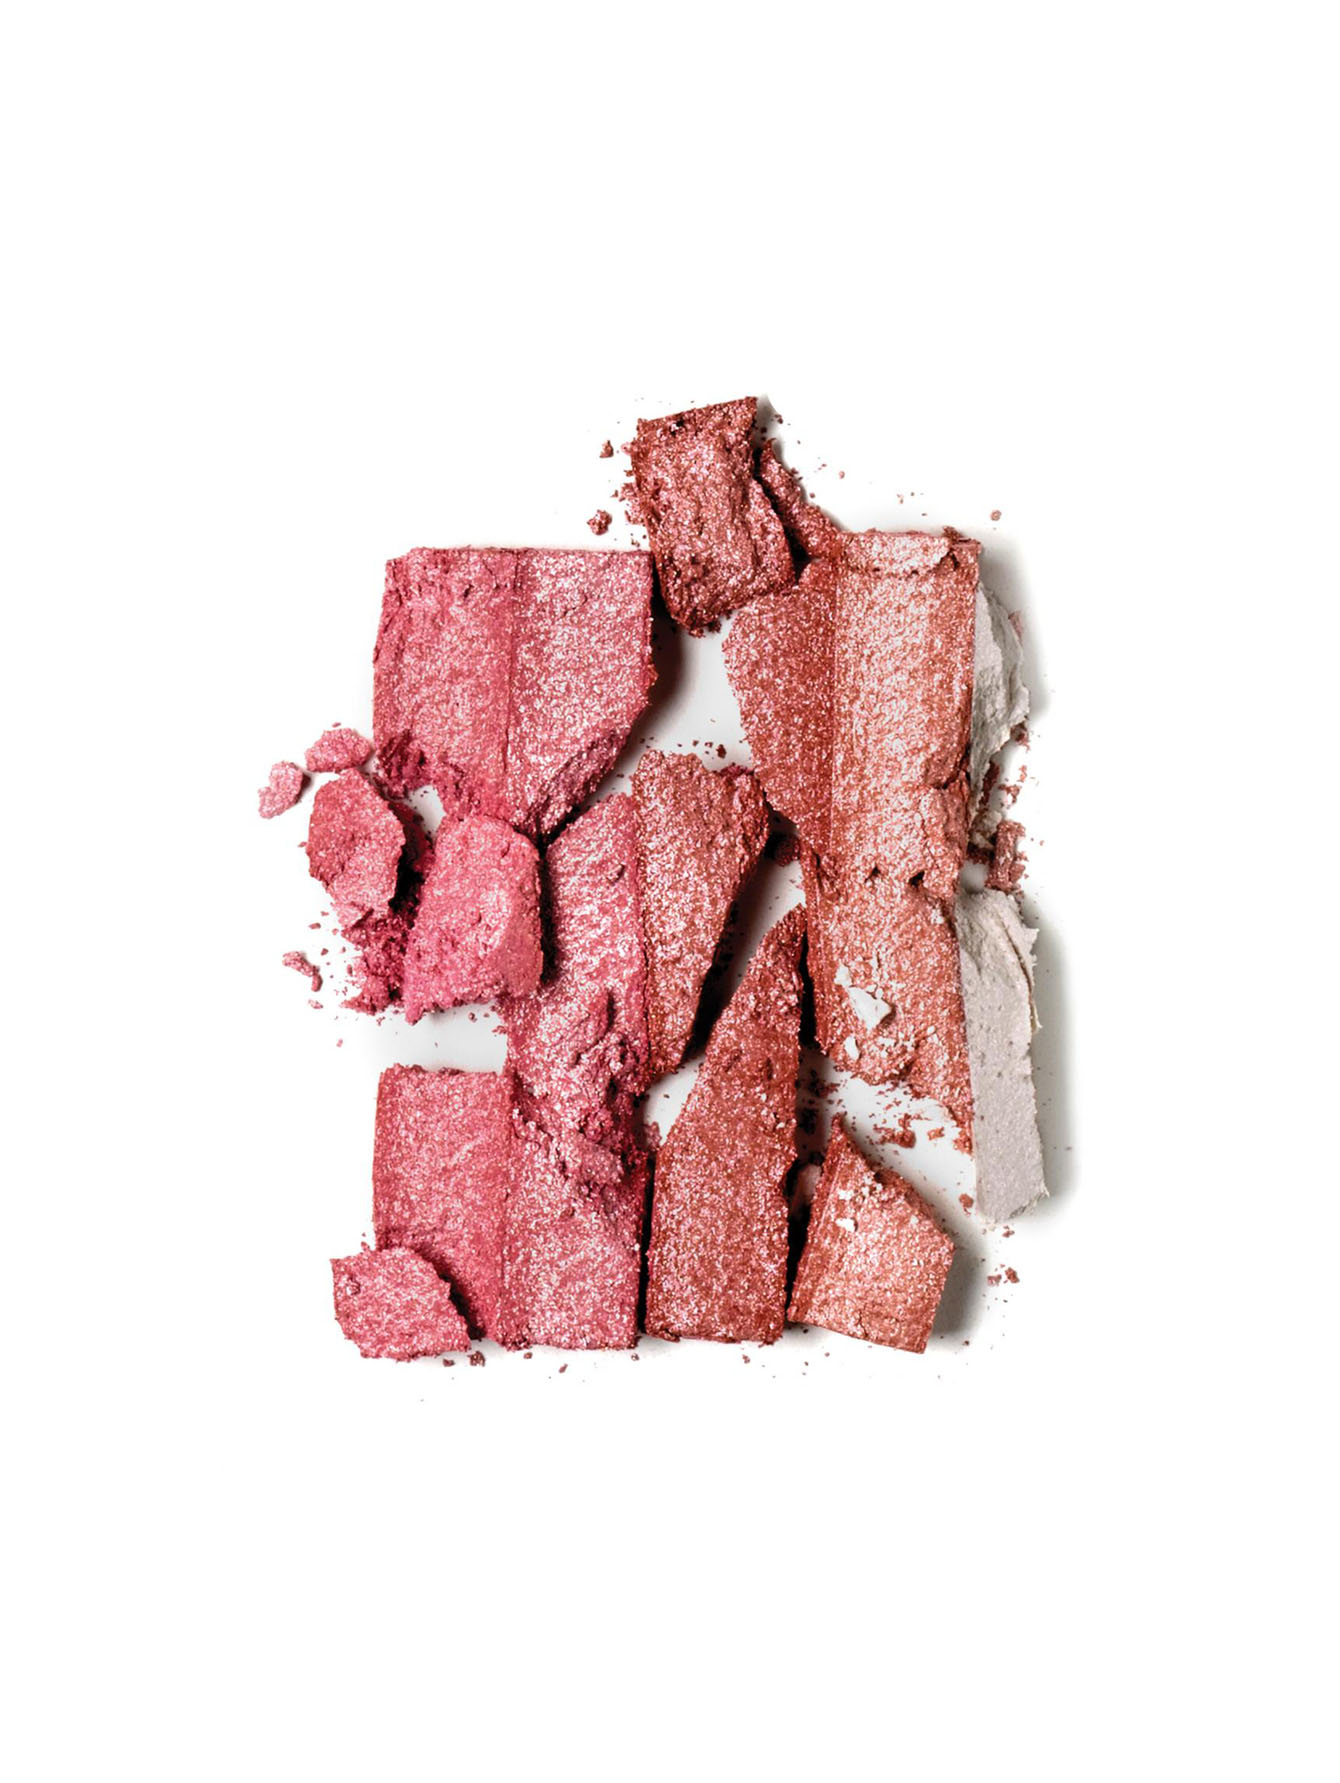  Пудра для лица - Rose, Shimmer Brick Compact  - Обтравка1